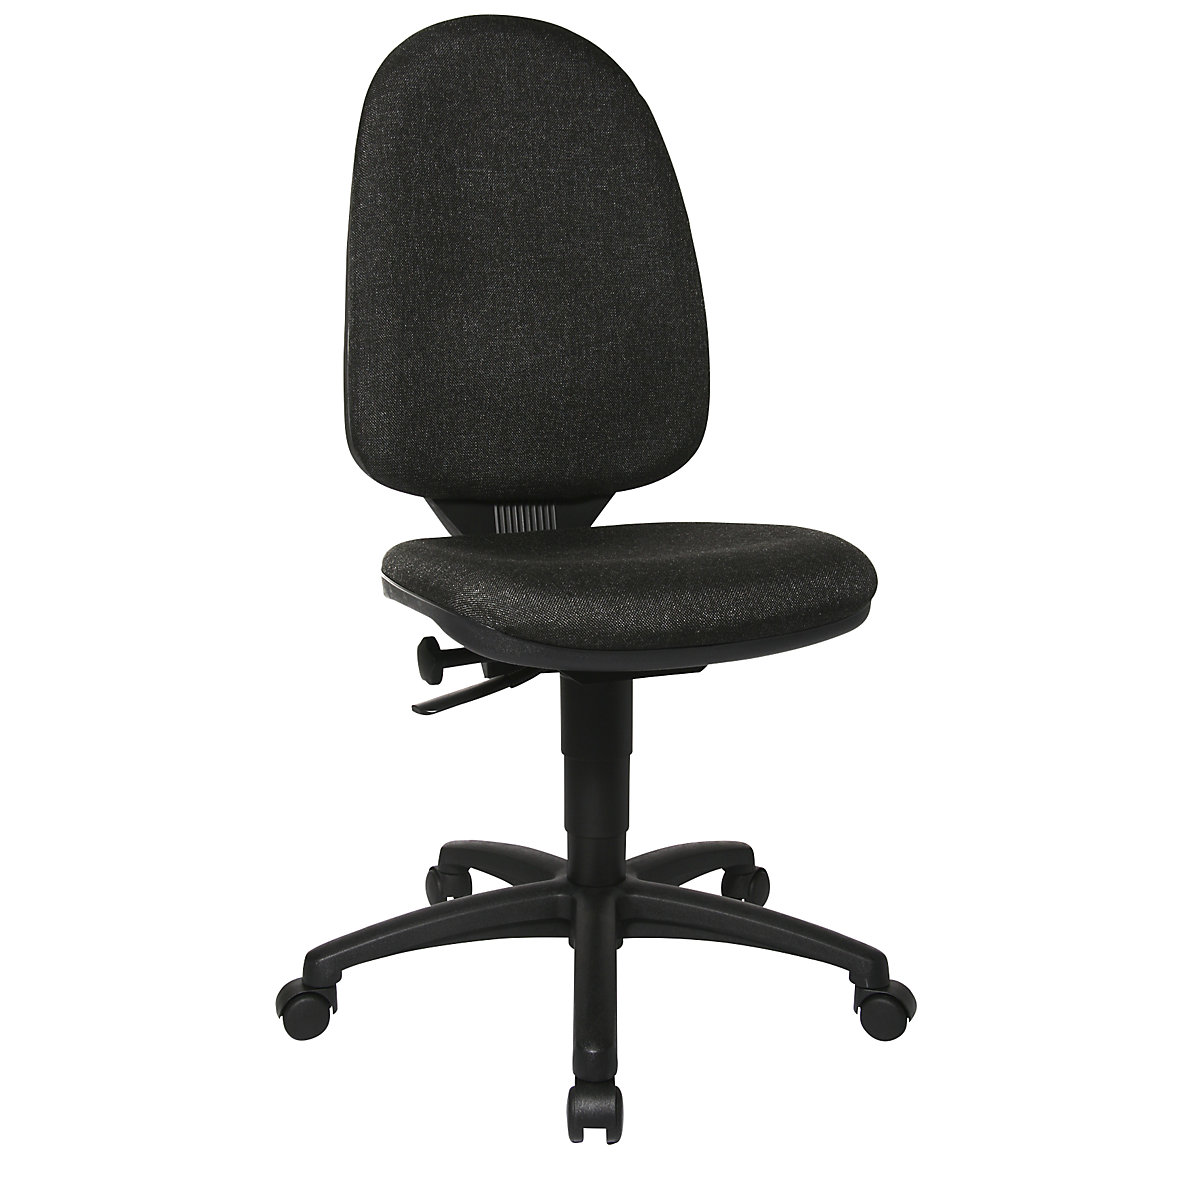 Standardní otočná židle – Topstar, bez područek, opěradlo 550 mm, podstavec černý, látka antracitová-5